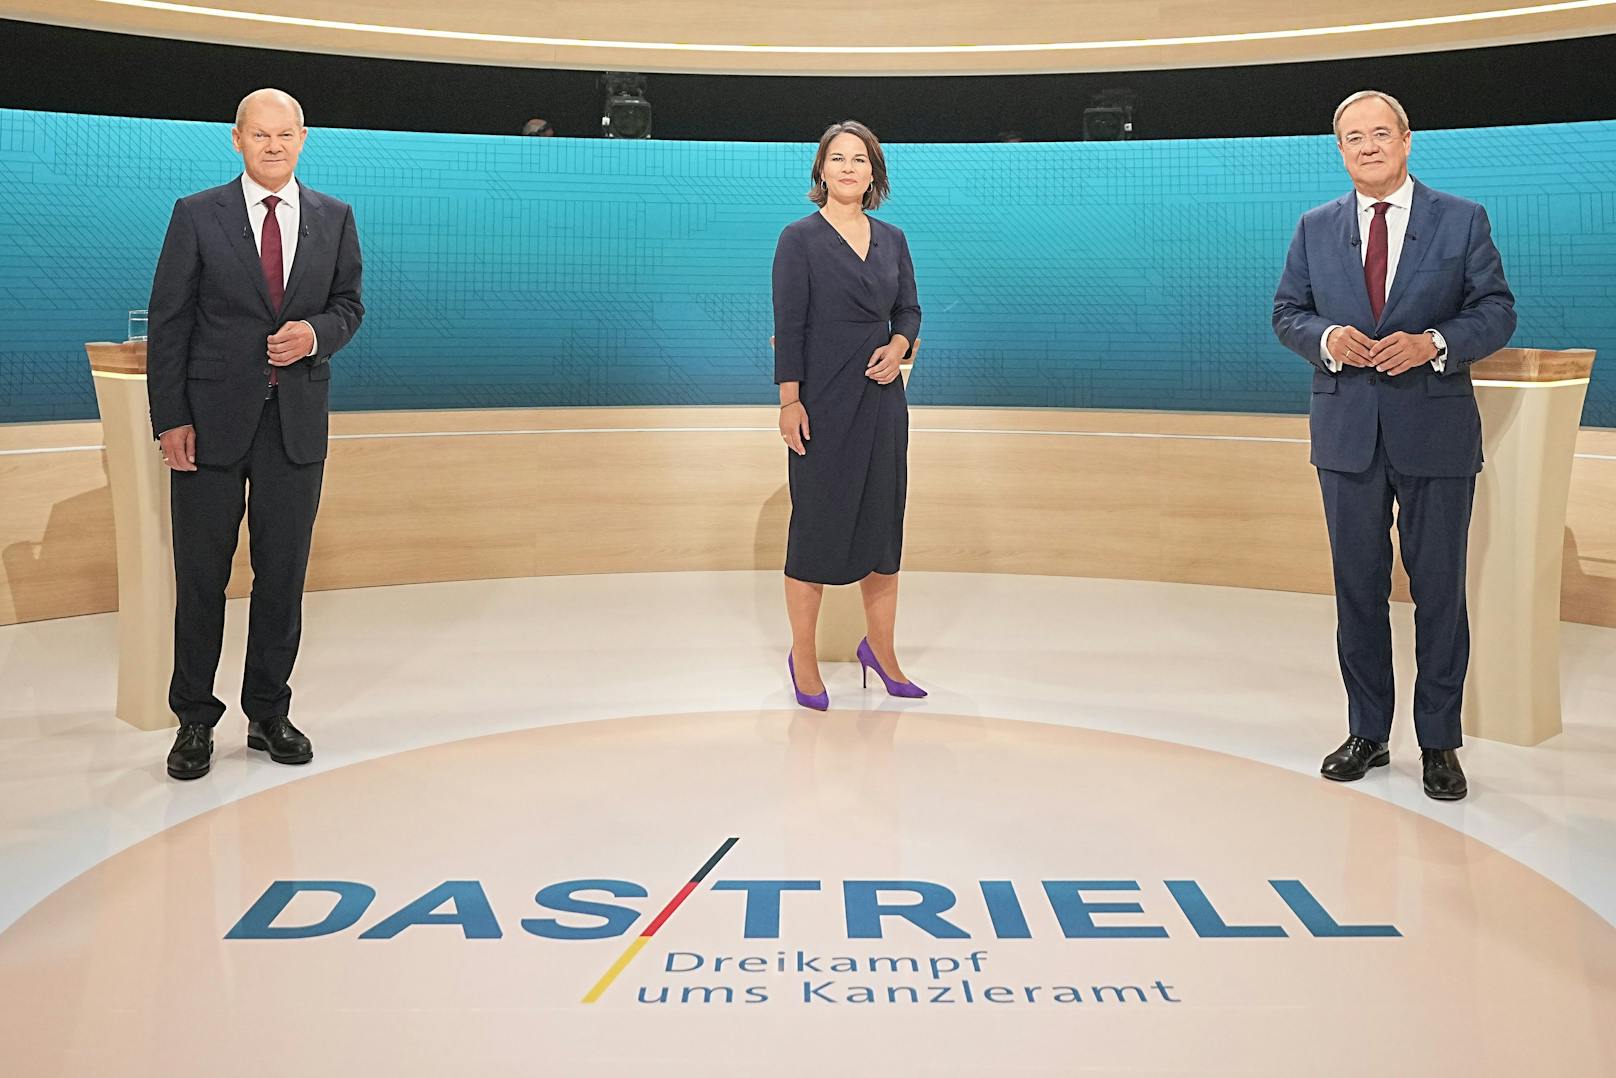 Olaf Scholz von der SPD, Annalena Baerbock von den Grünen und Armin Laschet von der CDU standen sich am Sonntagabend im deutschen Fernsehen gegenüber.